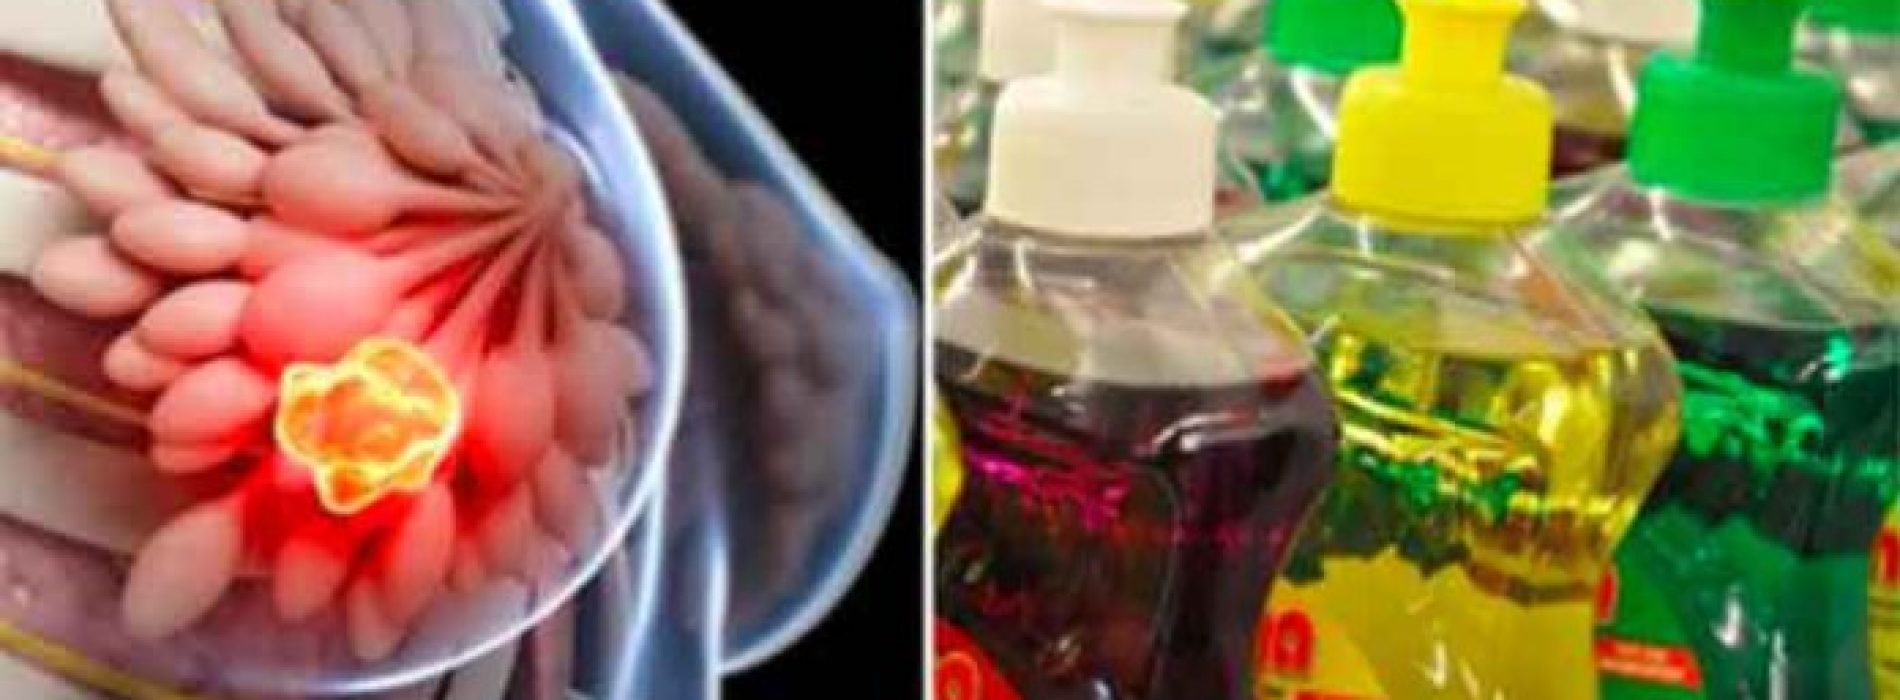 6 Gevaarlijke afwasmiddelen die Vol zitten met kankerverwekkende chemische stoffen!